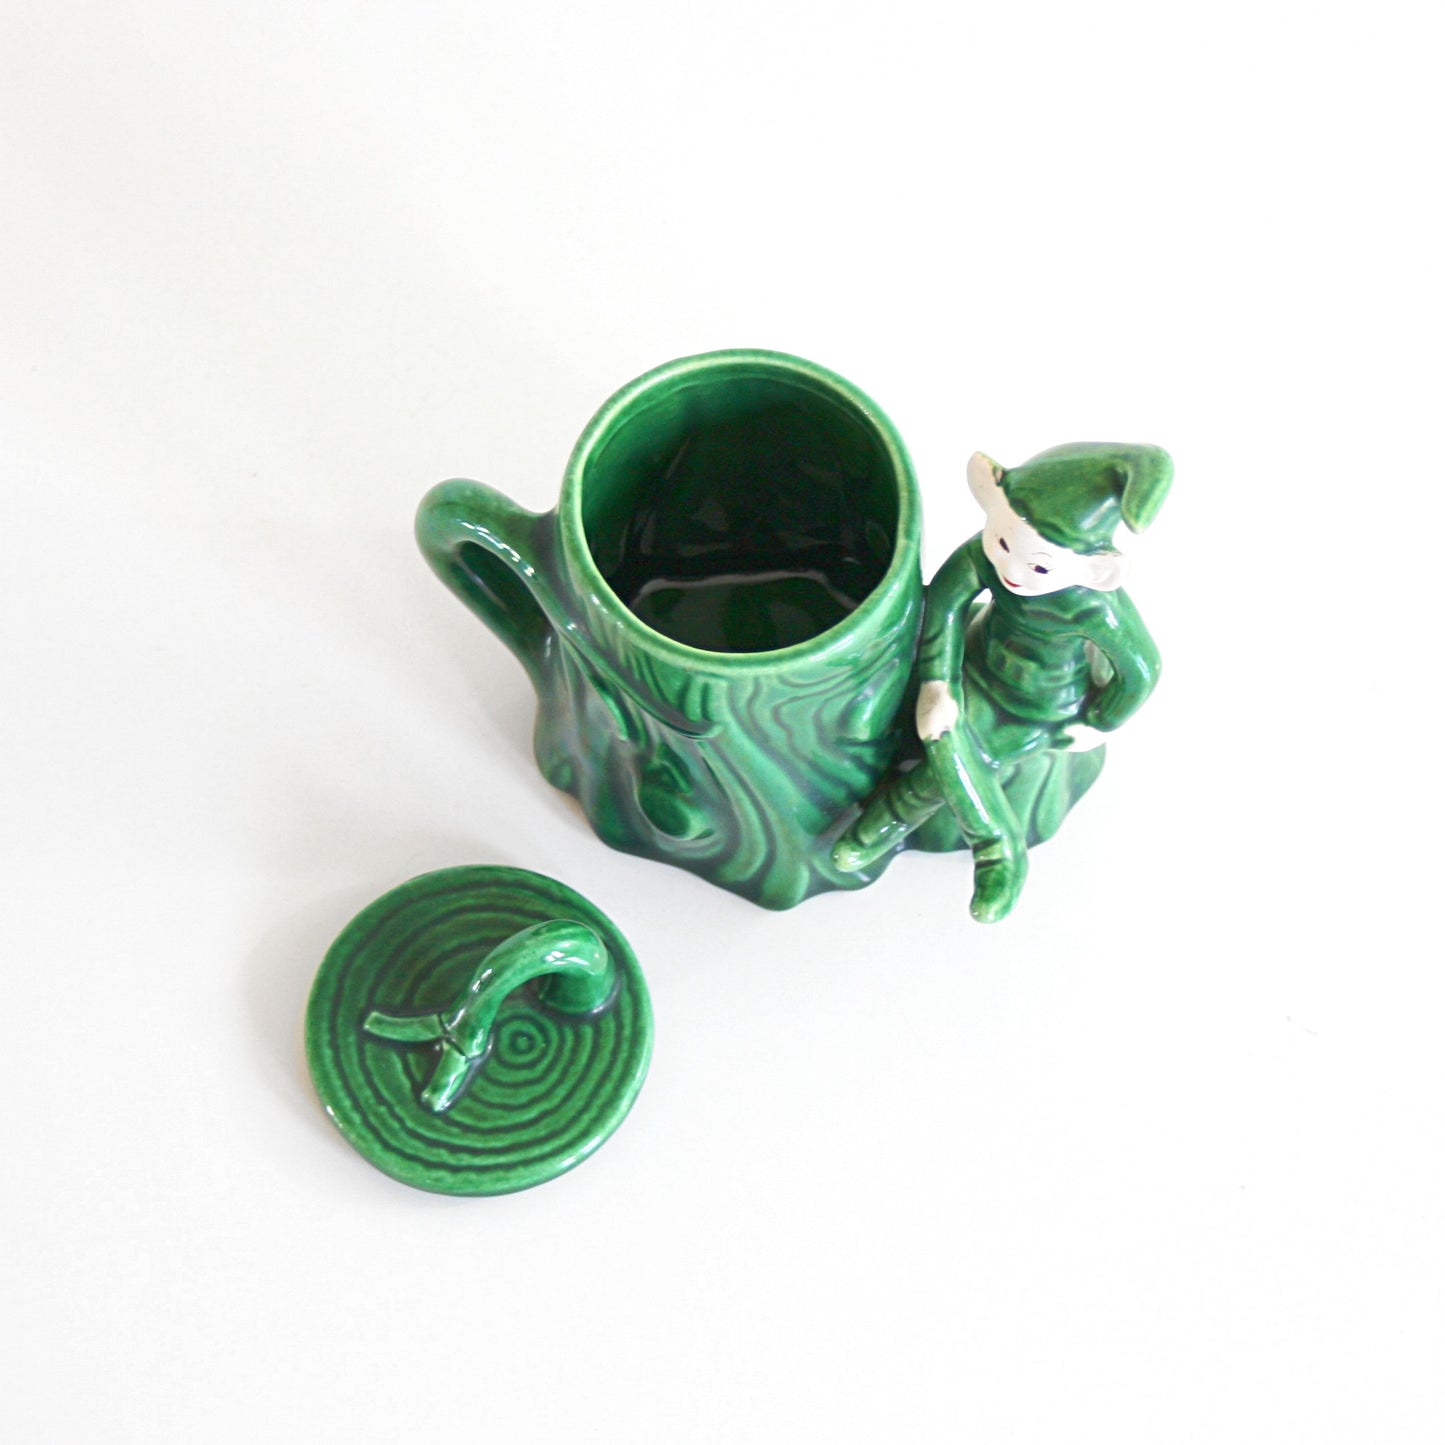 SOLD - Vintage Treasure Craft Elf Sugar Bowl / Vintage Pixie Jar